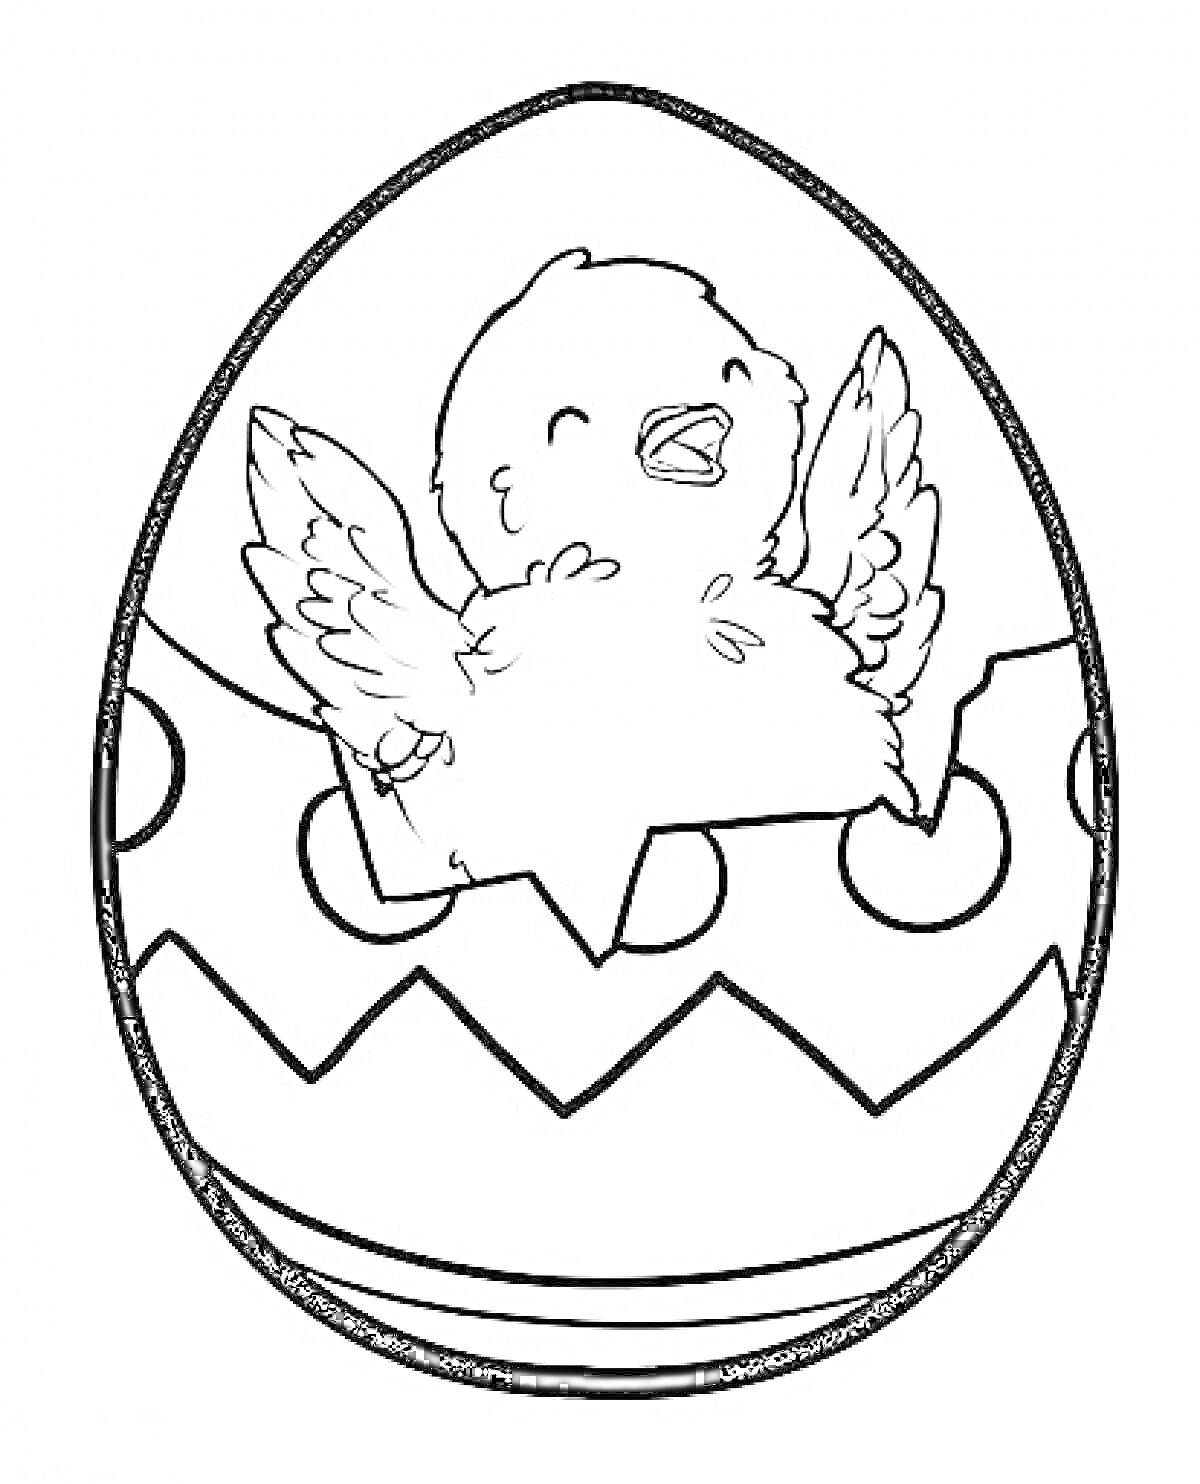 Пасхальное яйцо с цыпленком и узорами